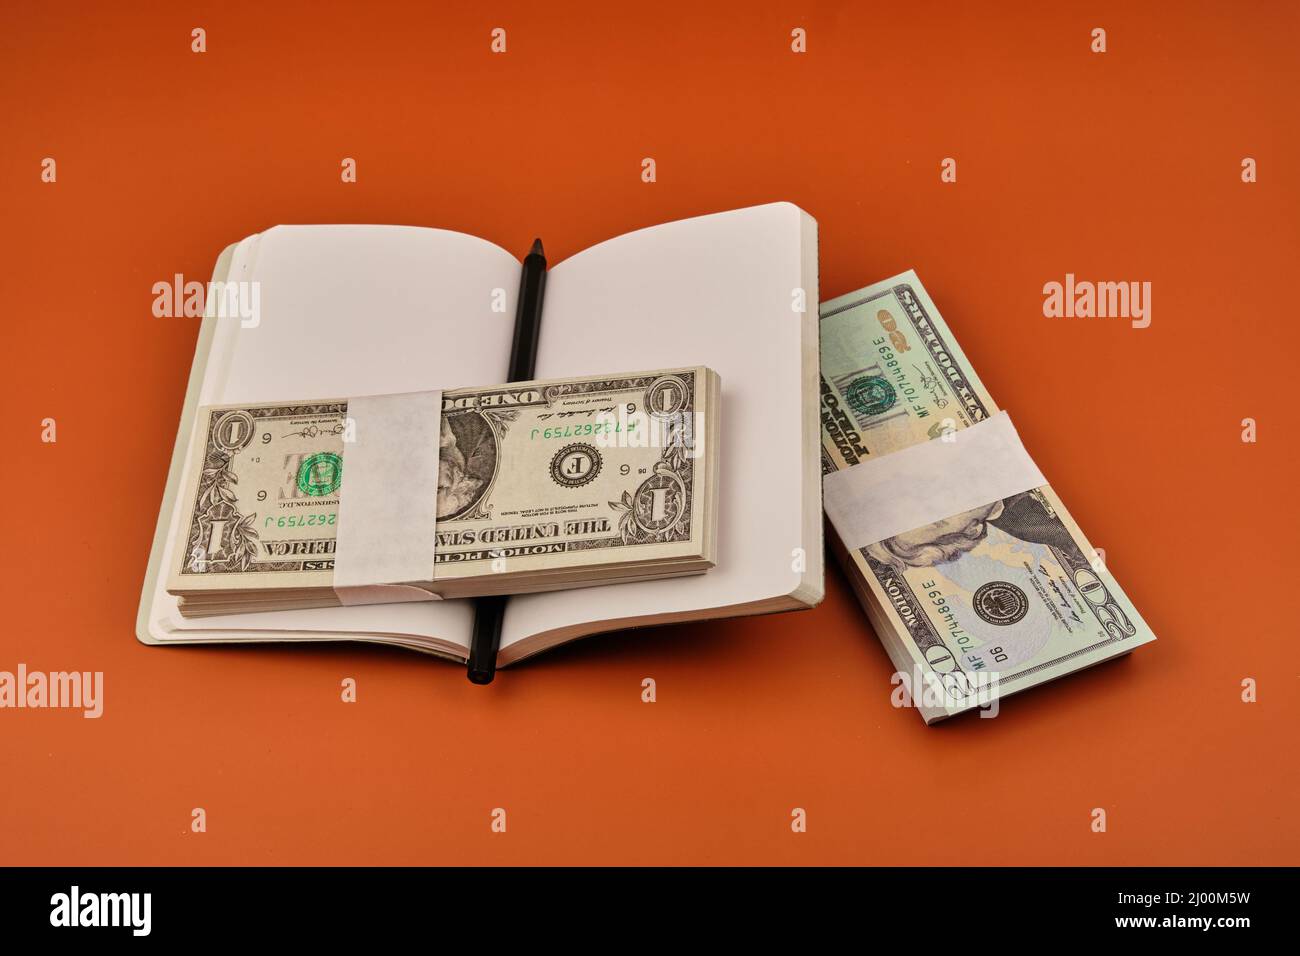 Ordinateur portable avec deux lots de dollars sur une table orange. Concept d'économies. Photographie au format horizontal. Copier l'espace. Banque D'Images